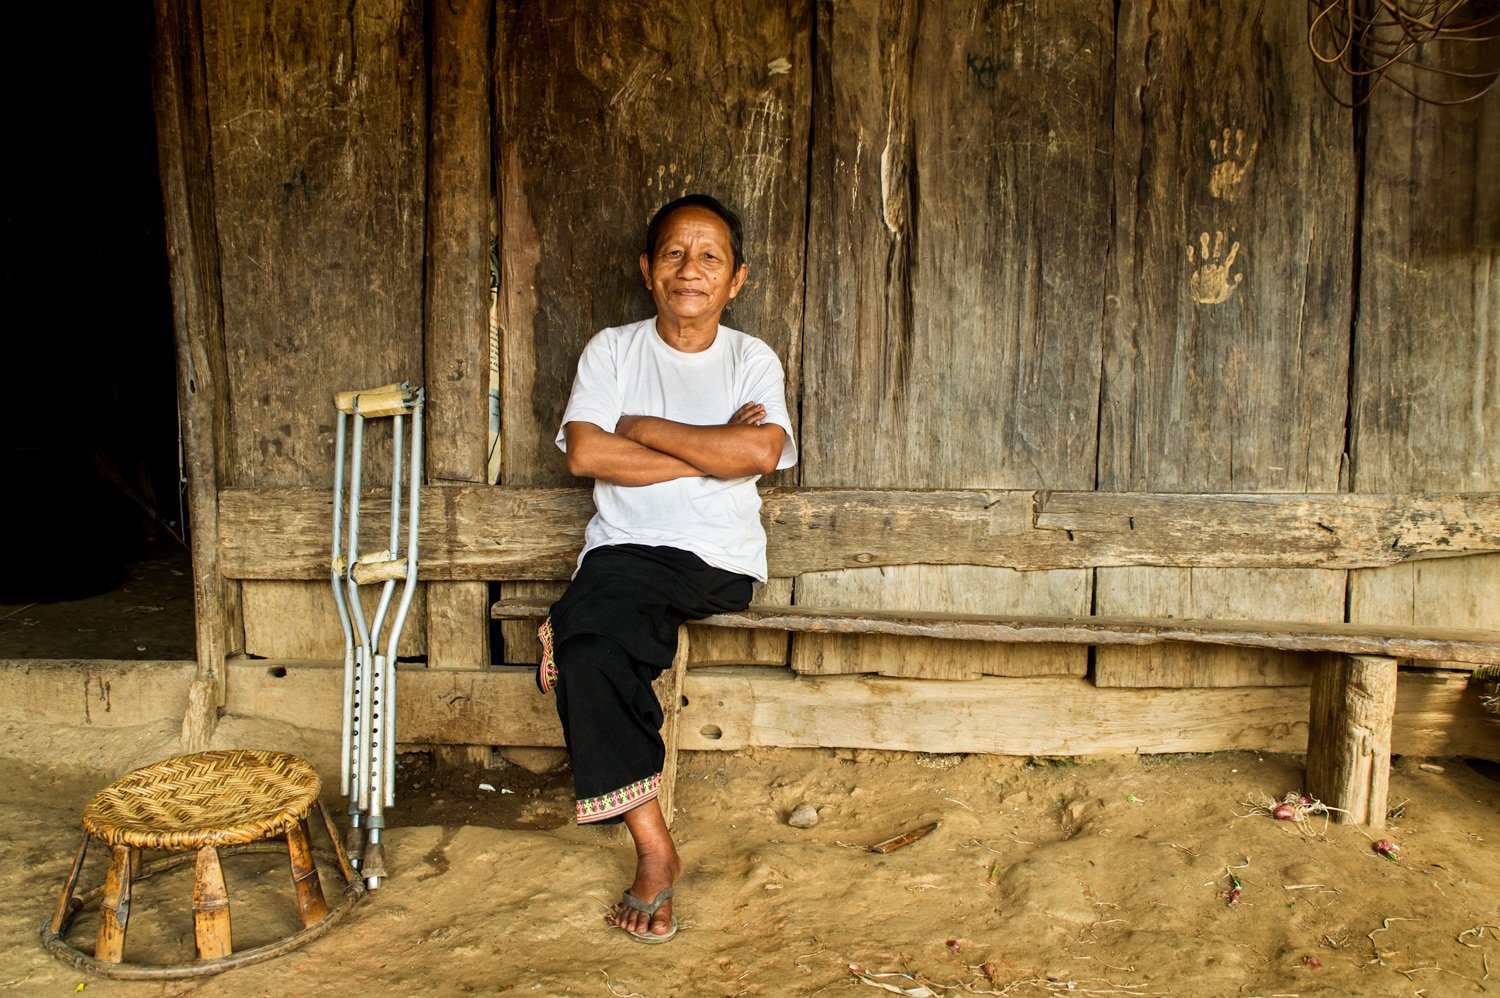 Portfolio of KevinLJ © Kevin Landwer-Johan Hmong Amputee